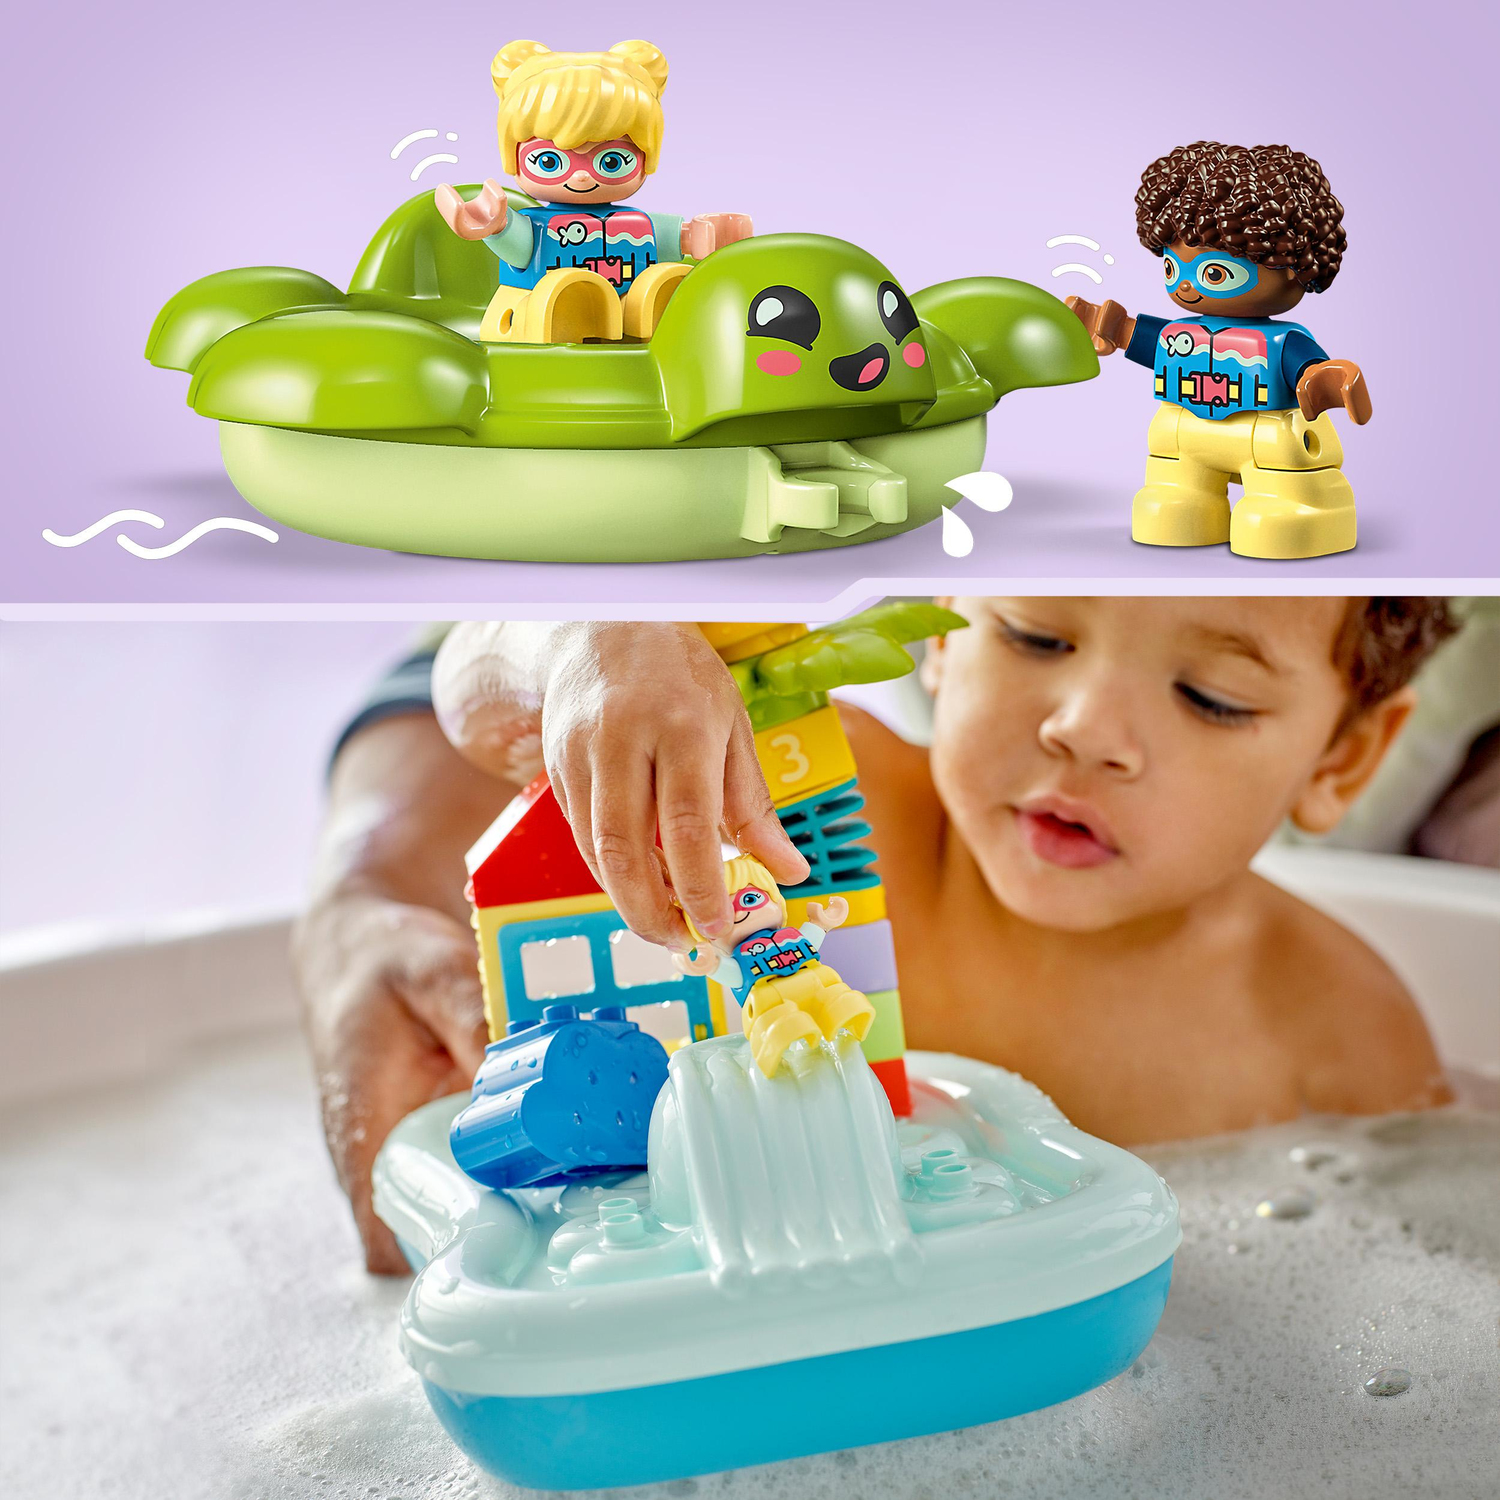 LEGO DUPLO Town Water Park 10989 Juego educativo de juguete de baño para  niños de 2 años en adelante, cuenta con un anillo de tortuga flotante y un